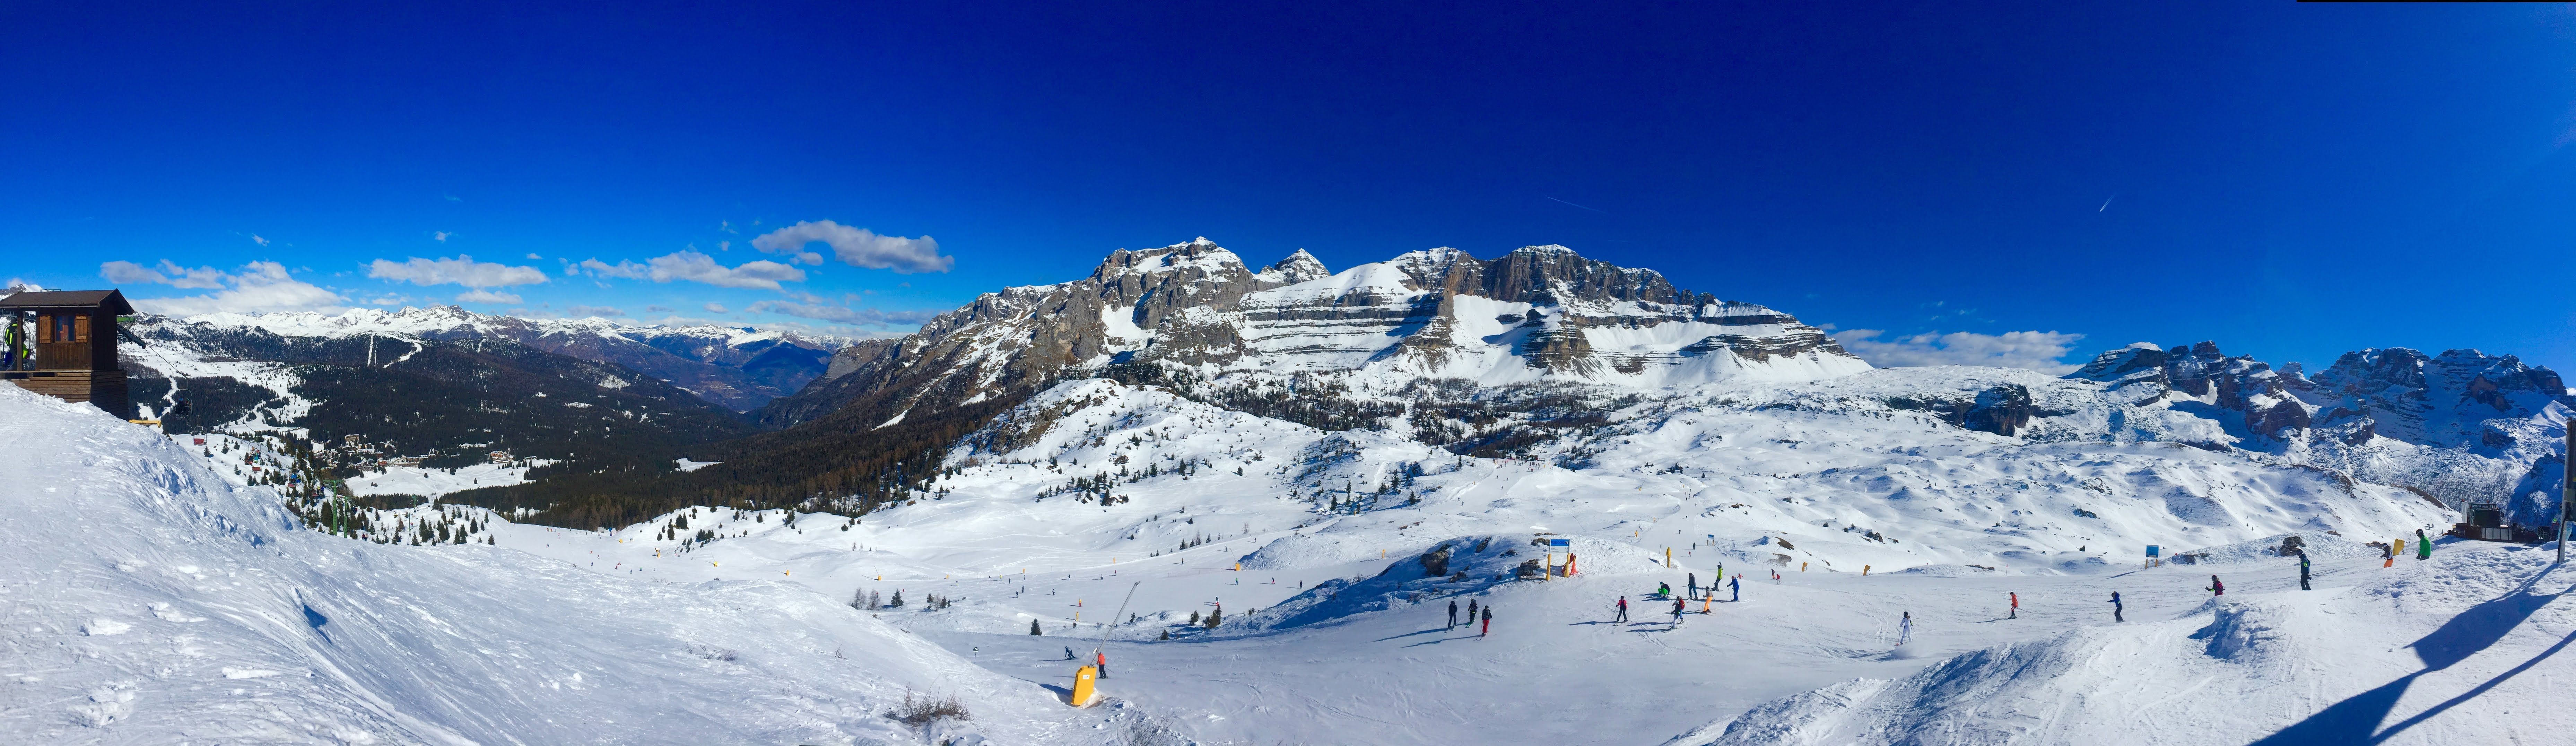 Capture: Madonna di Campilio ski resort, Italy